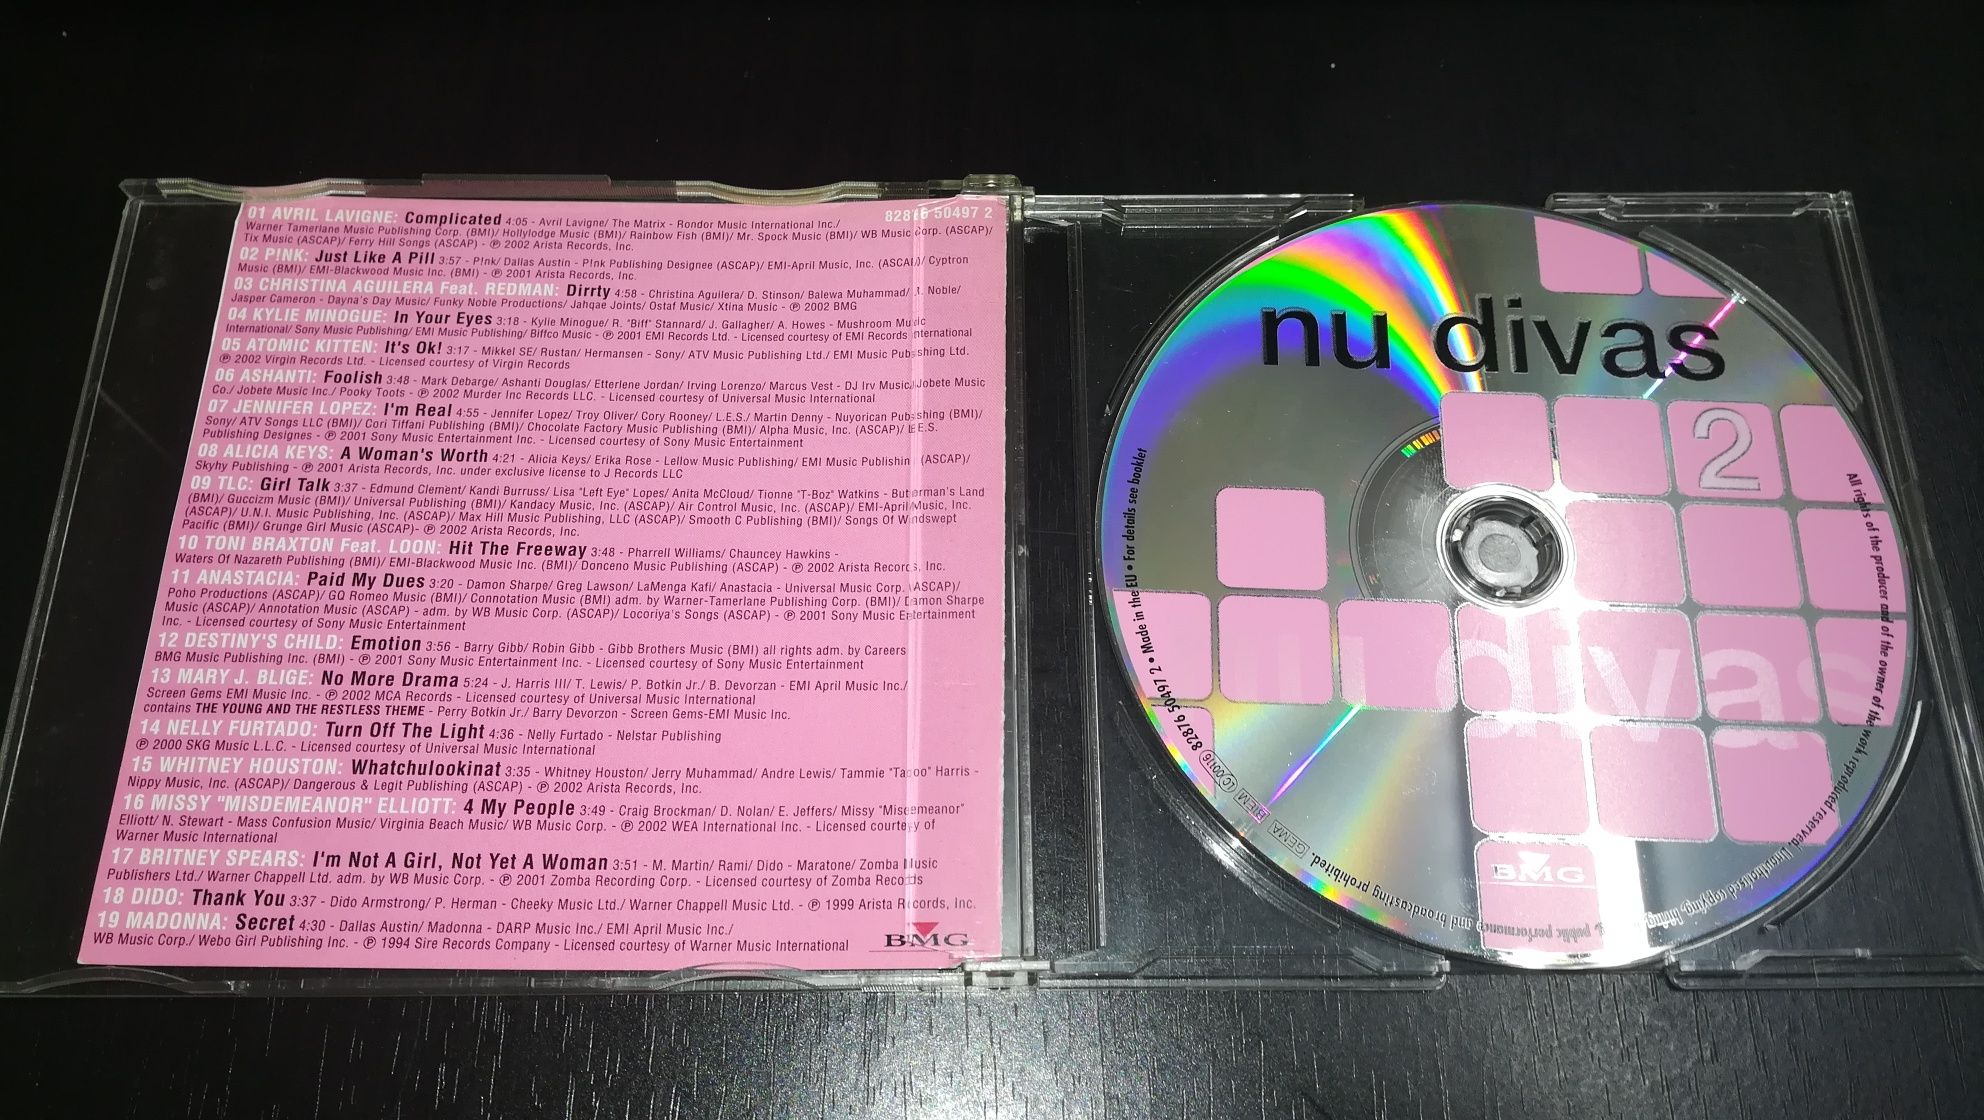 CD Coletânea "Nu Divas 2" (Optimo Estado)